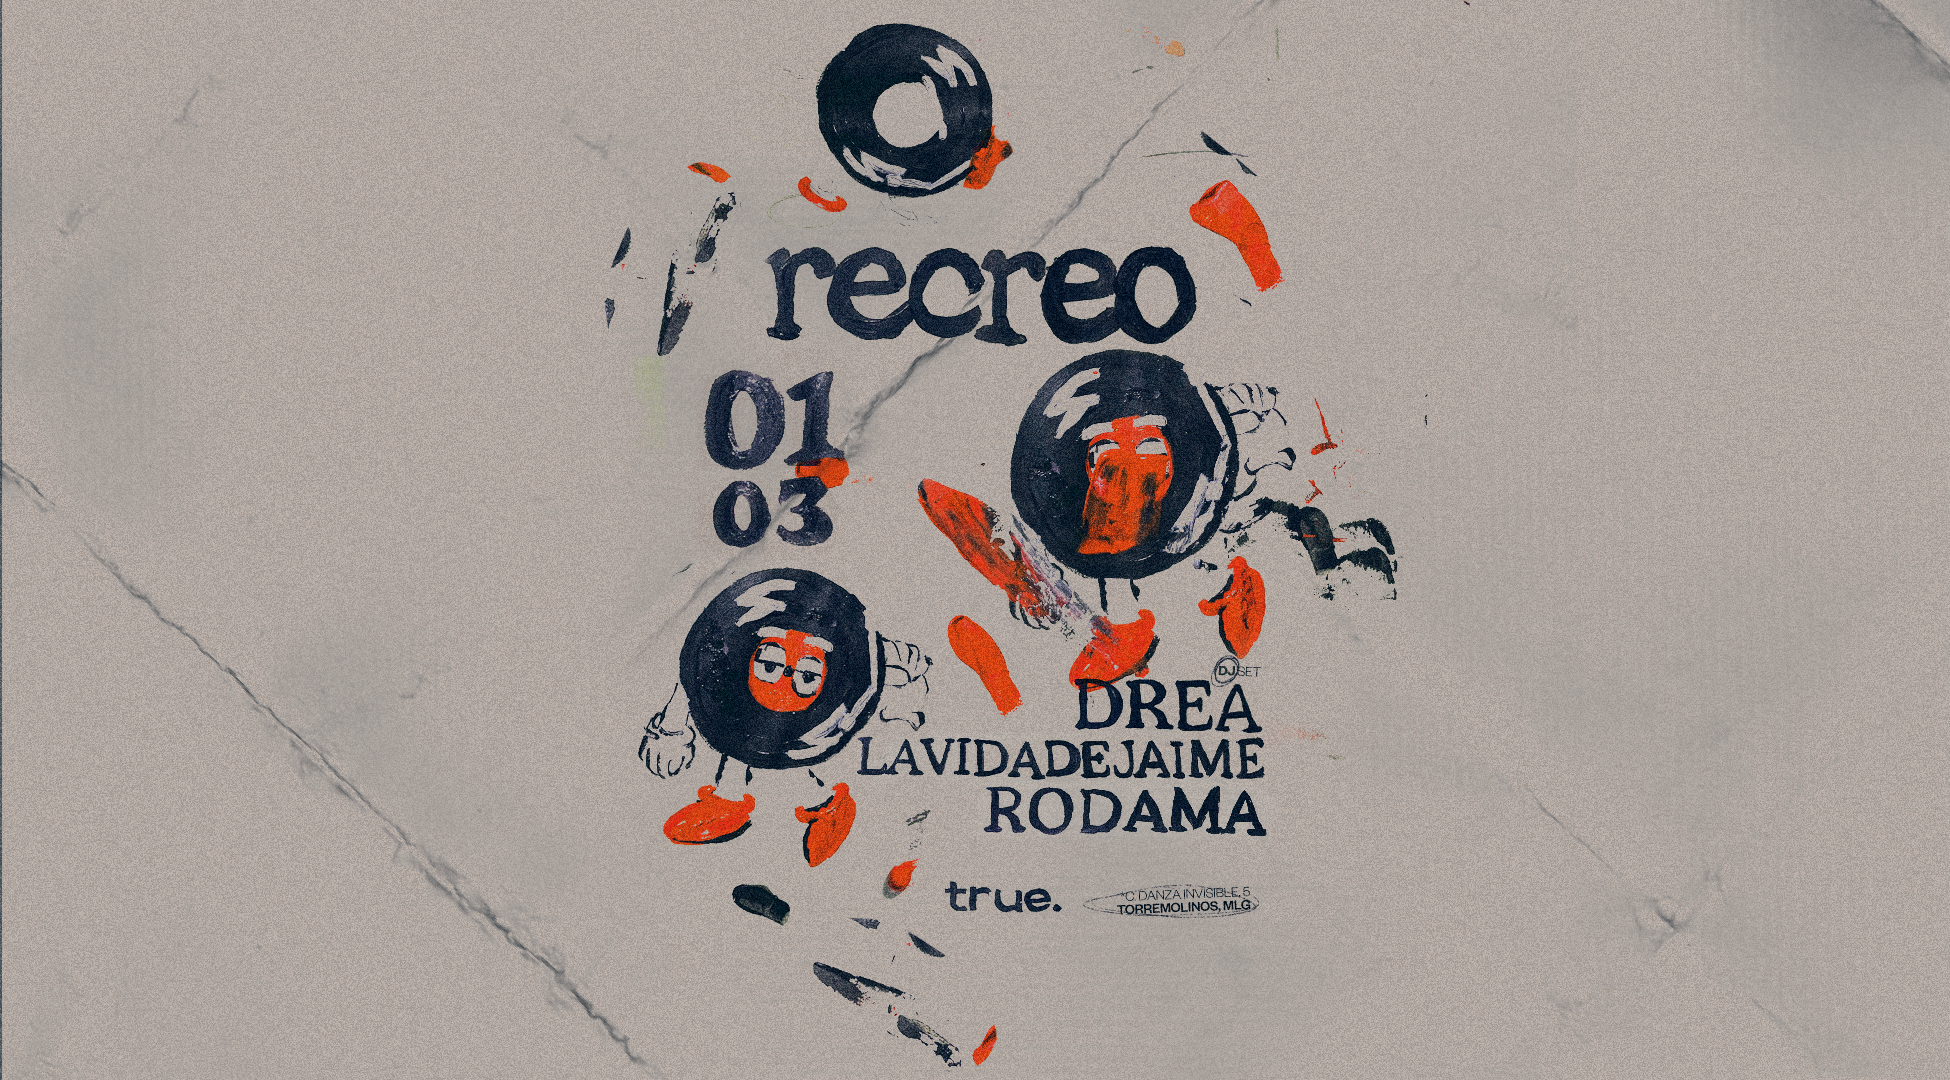 Recreo Club with DREA, La Vida de Jaime, Rodama - Página frontal